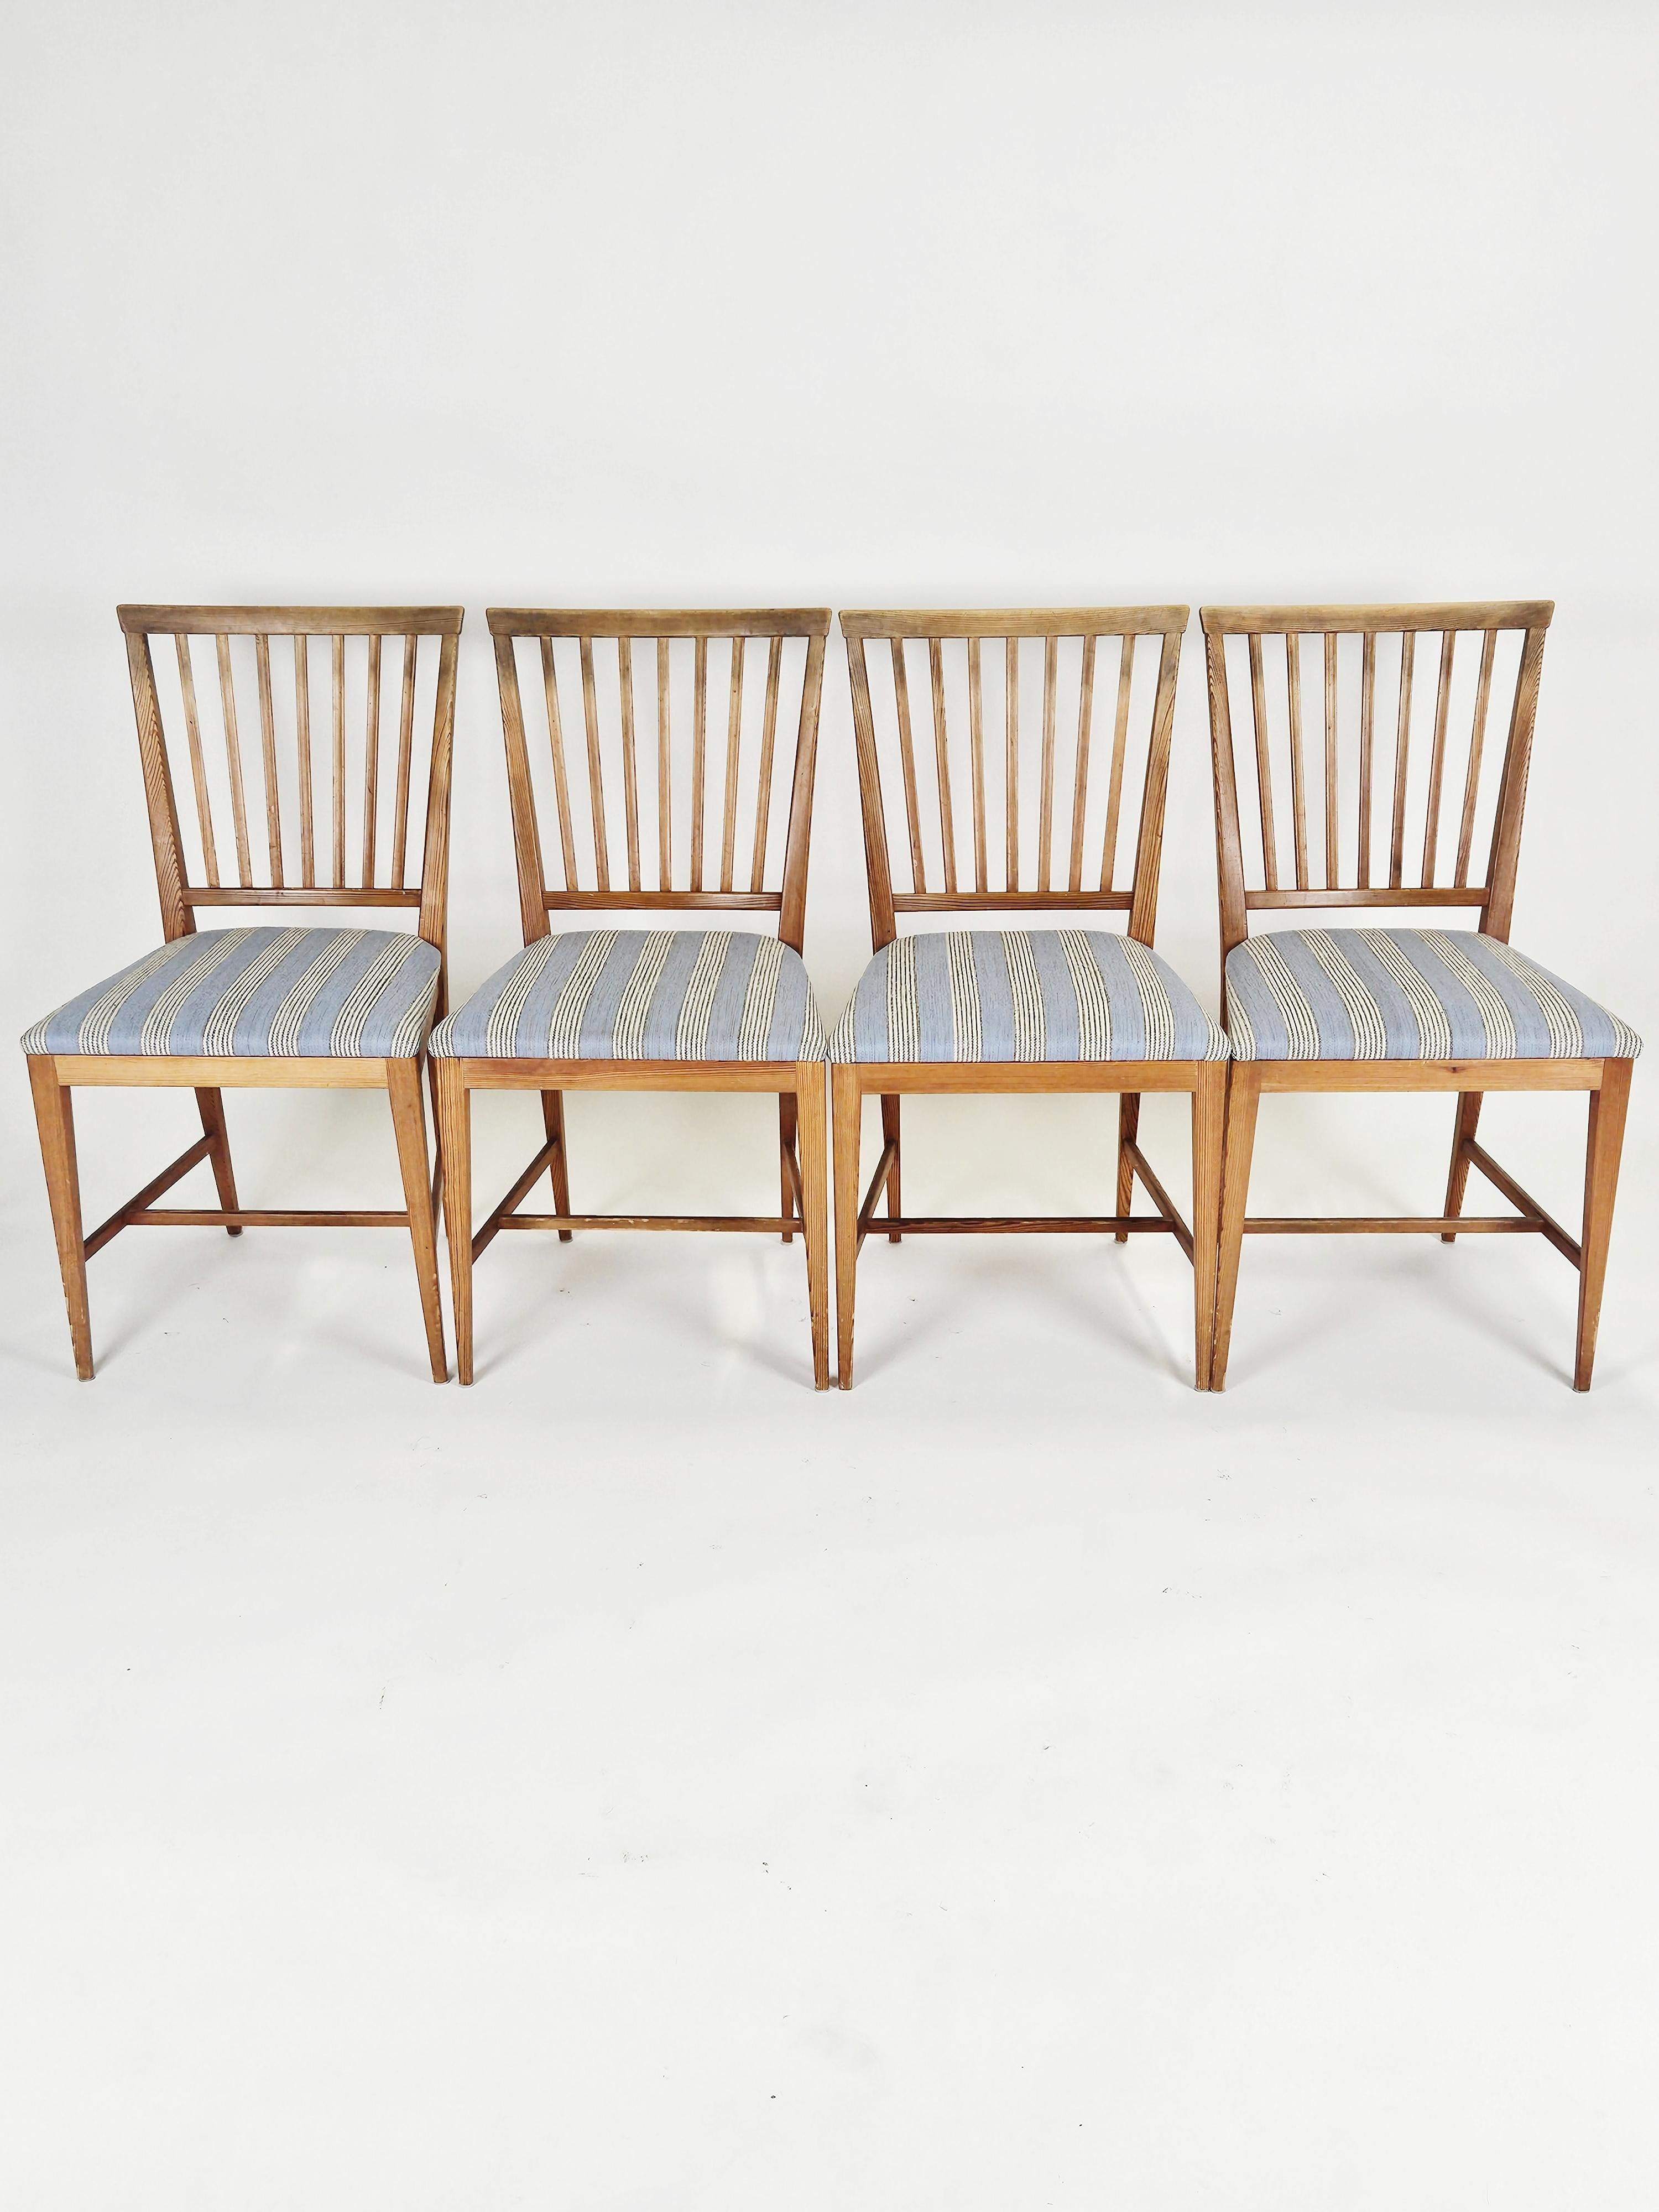 Vierer-Set  Moderne skandinavische Esszimmerstühle aus Kiefernholz, entworfen von Carl Malmsten in den 1960er Jahren. 

Passt perfekt zu den anderen Sporthüttenmöbeln aus Schweden. 

Schöner Originalstoff in Blau, Grau und Weiß. 

Hübsche Patina. 